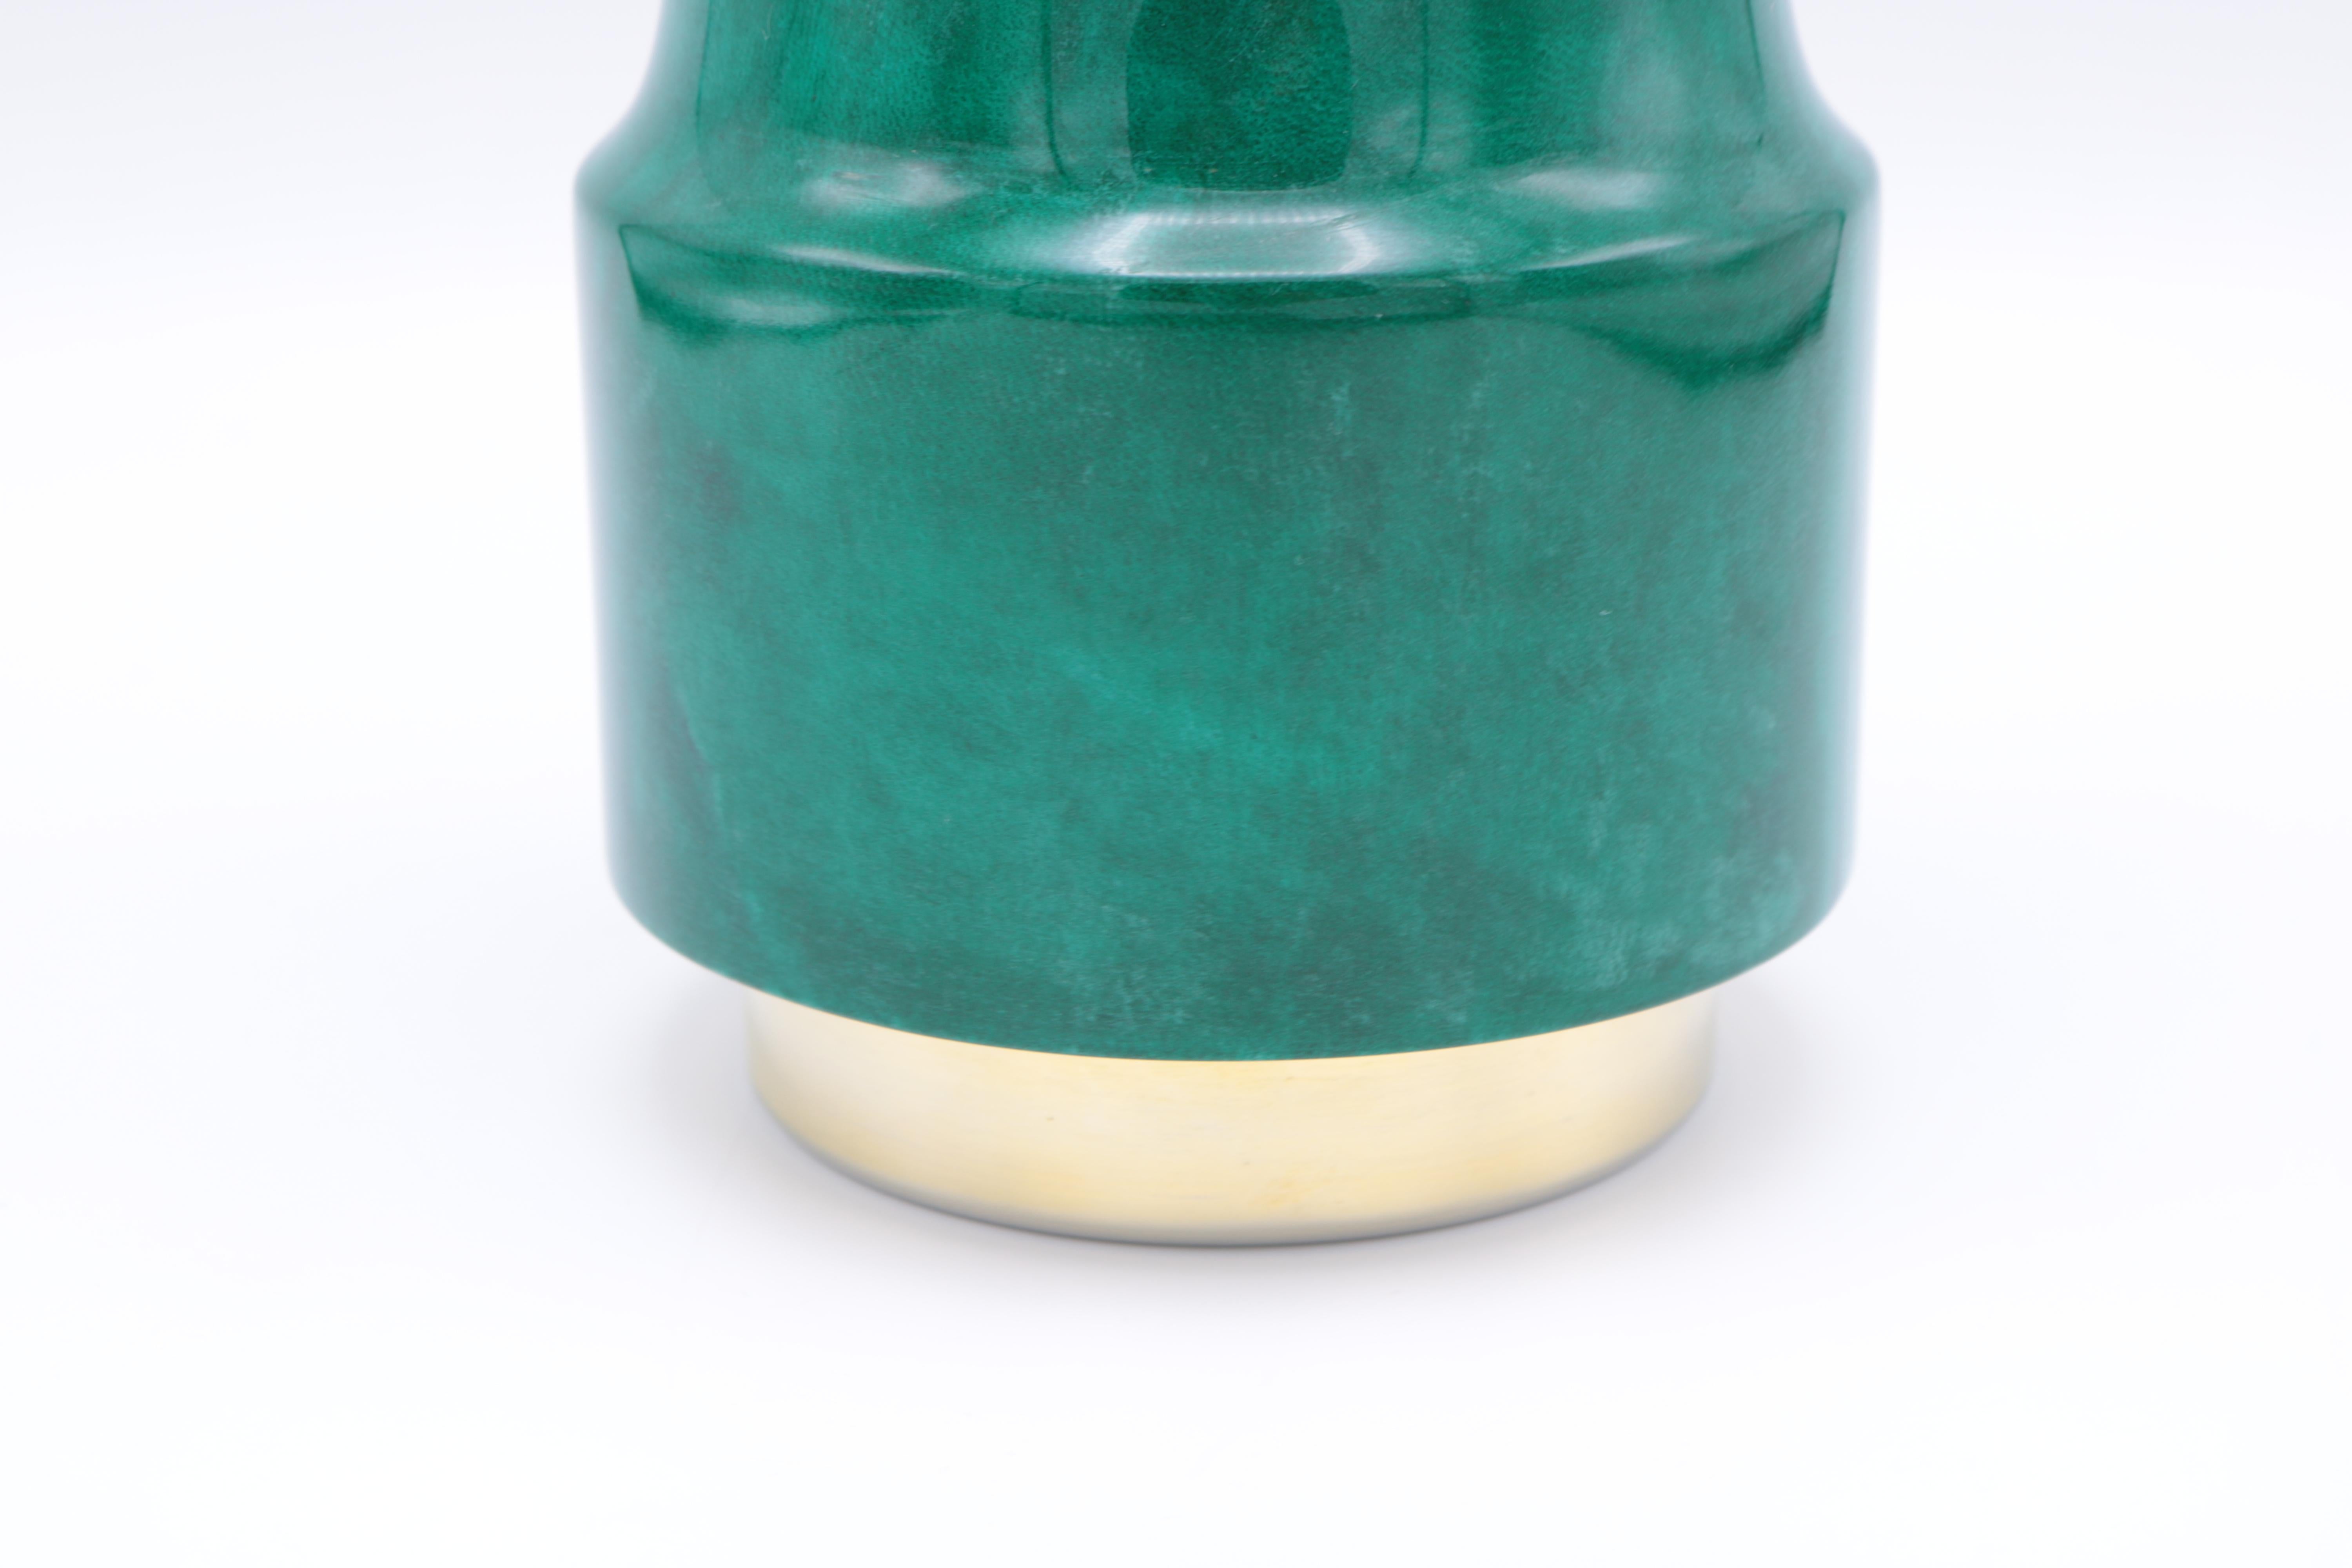 Un shaker moderniste d'Aldo Tura. 
Parchemin de couleur verte avec des détails plaqués argent et laiton.